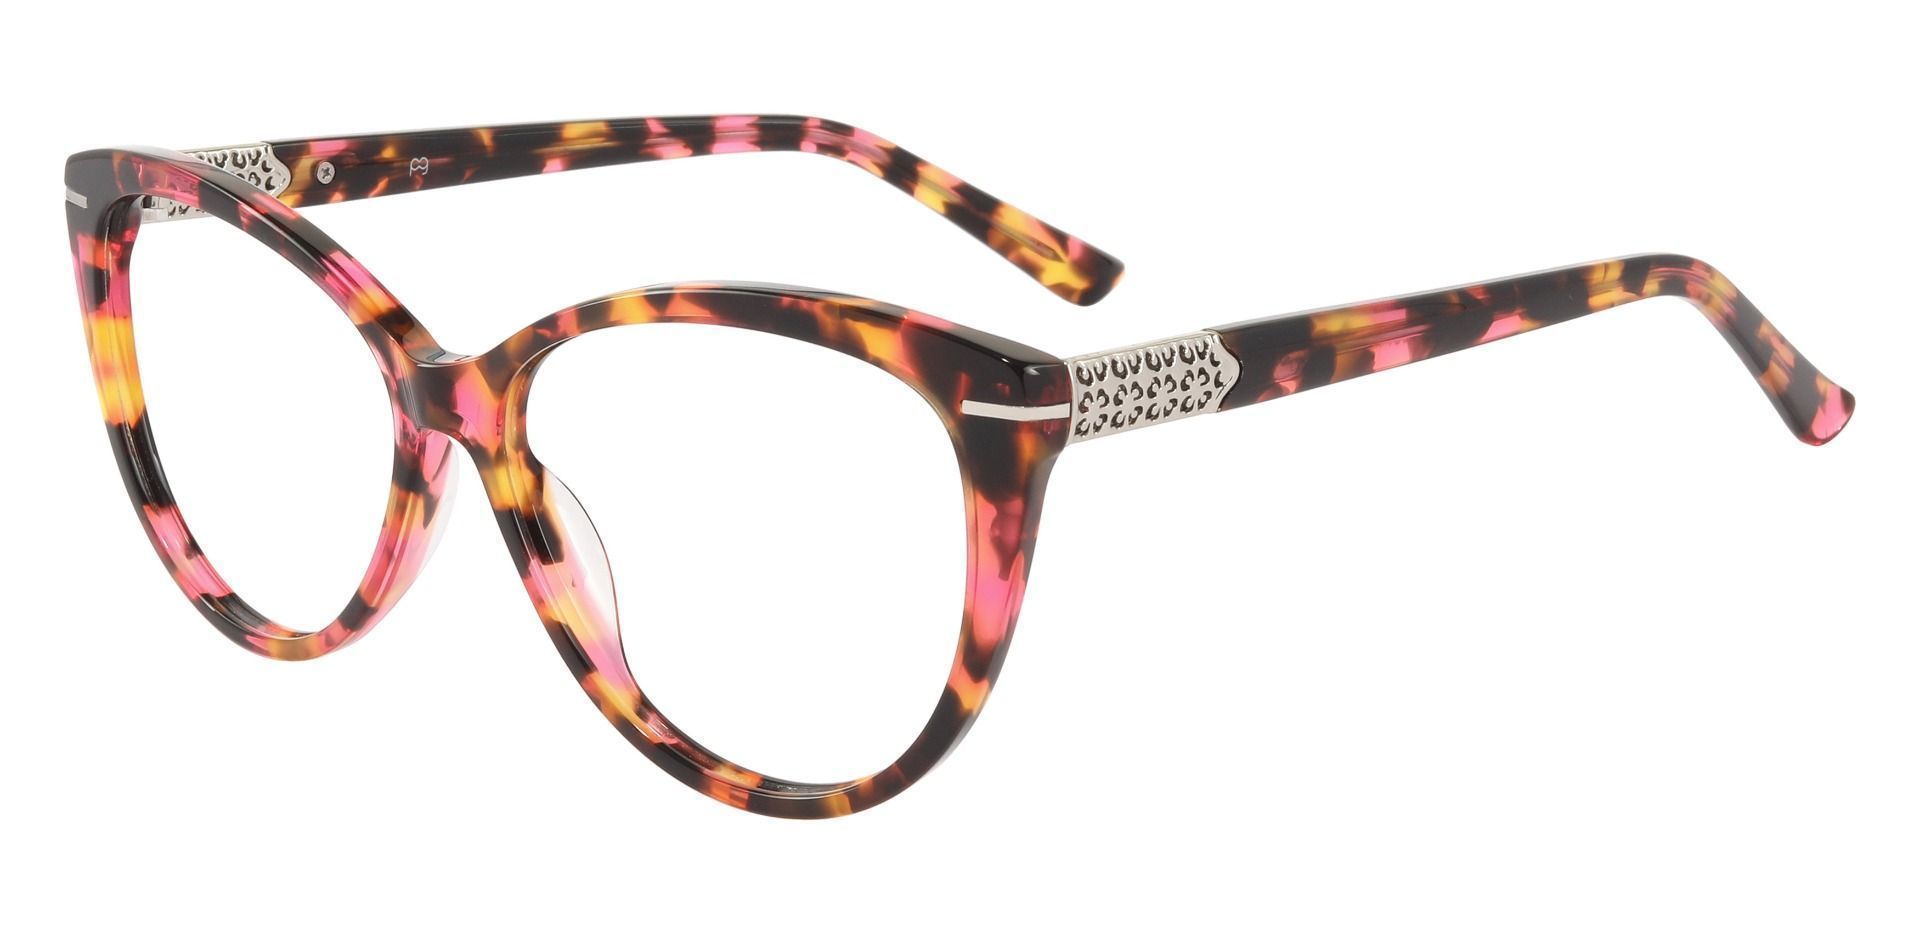 Canberra Cat Eye Prescription Glasses - Floral